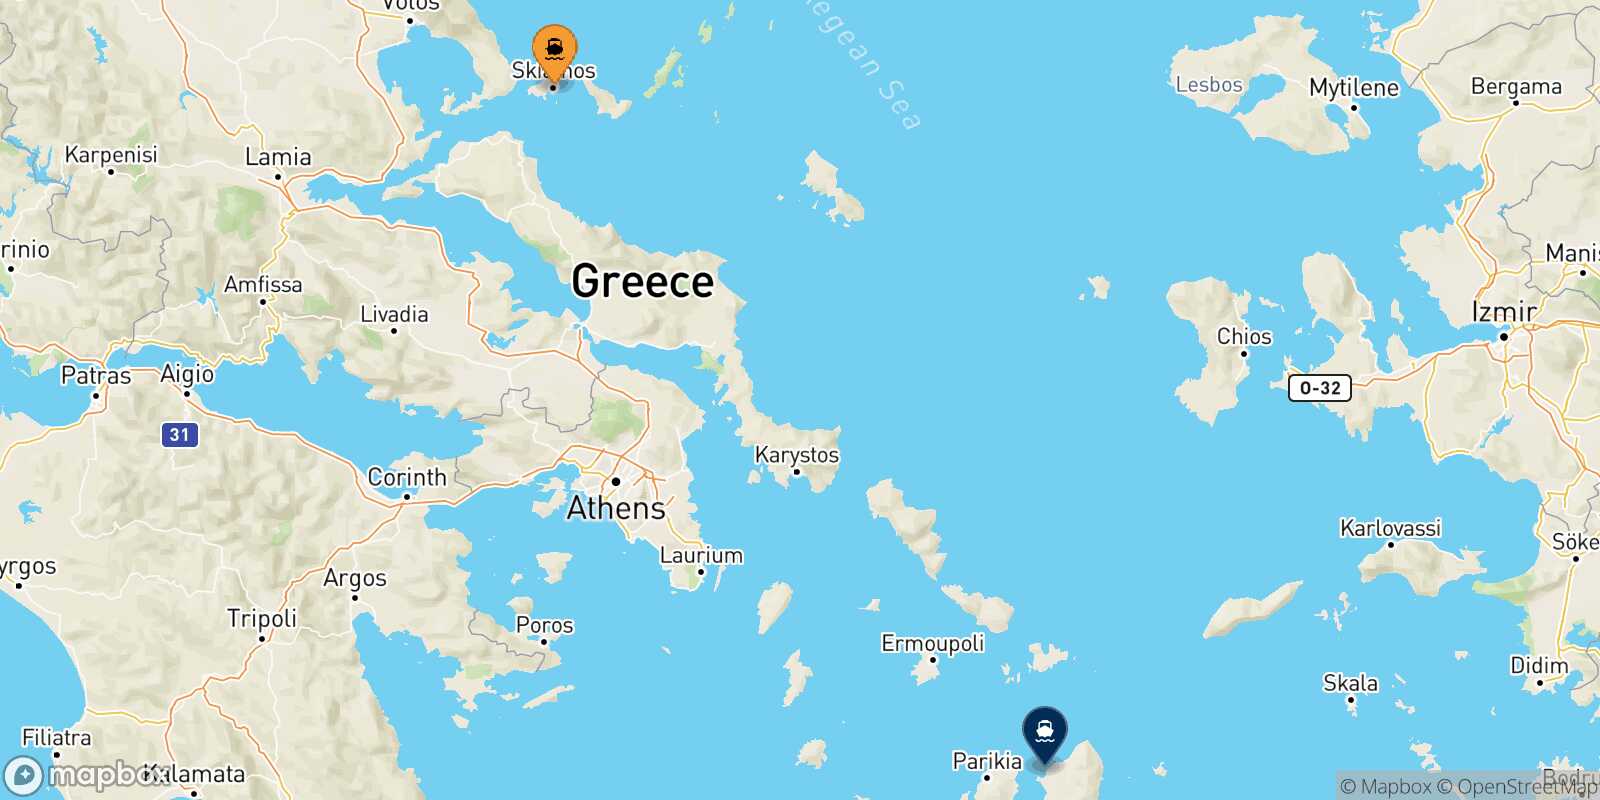 Skiathos Naxos route map